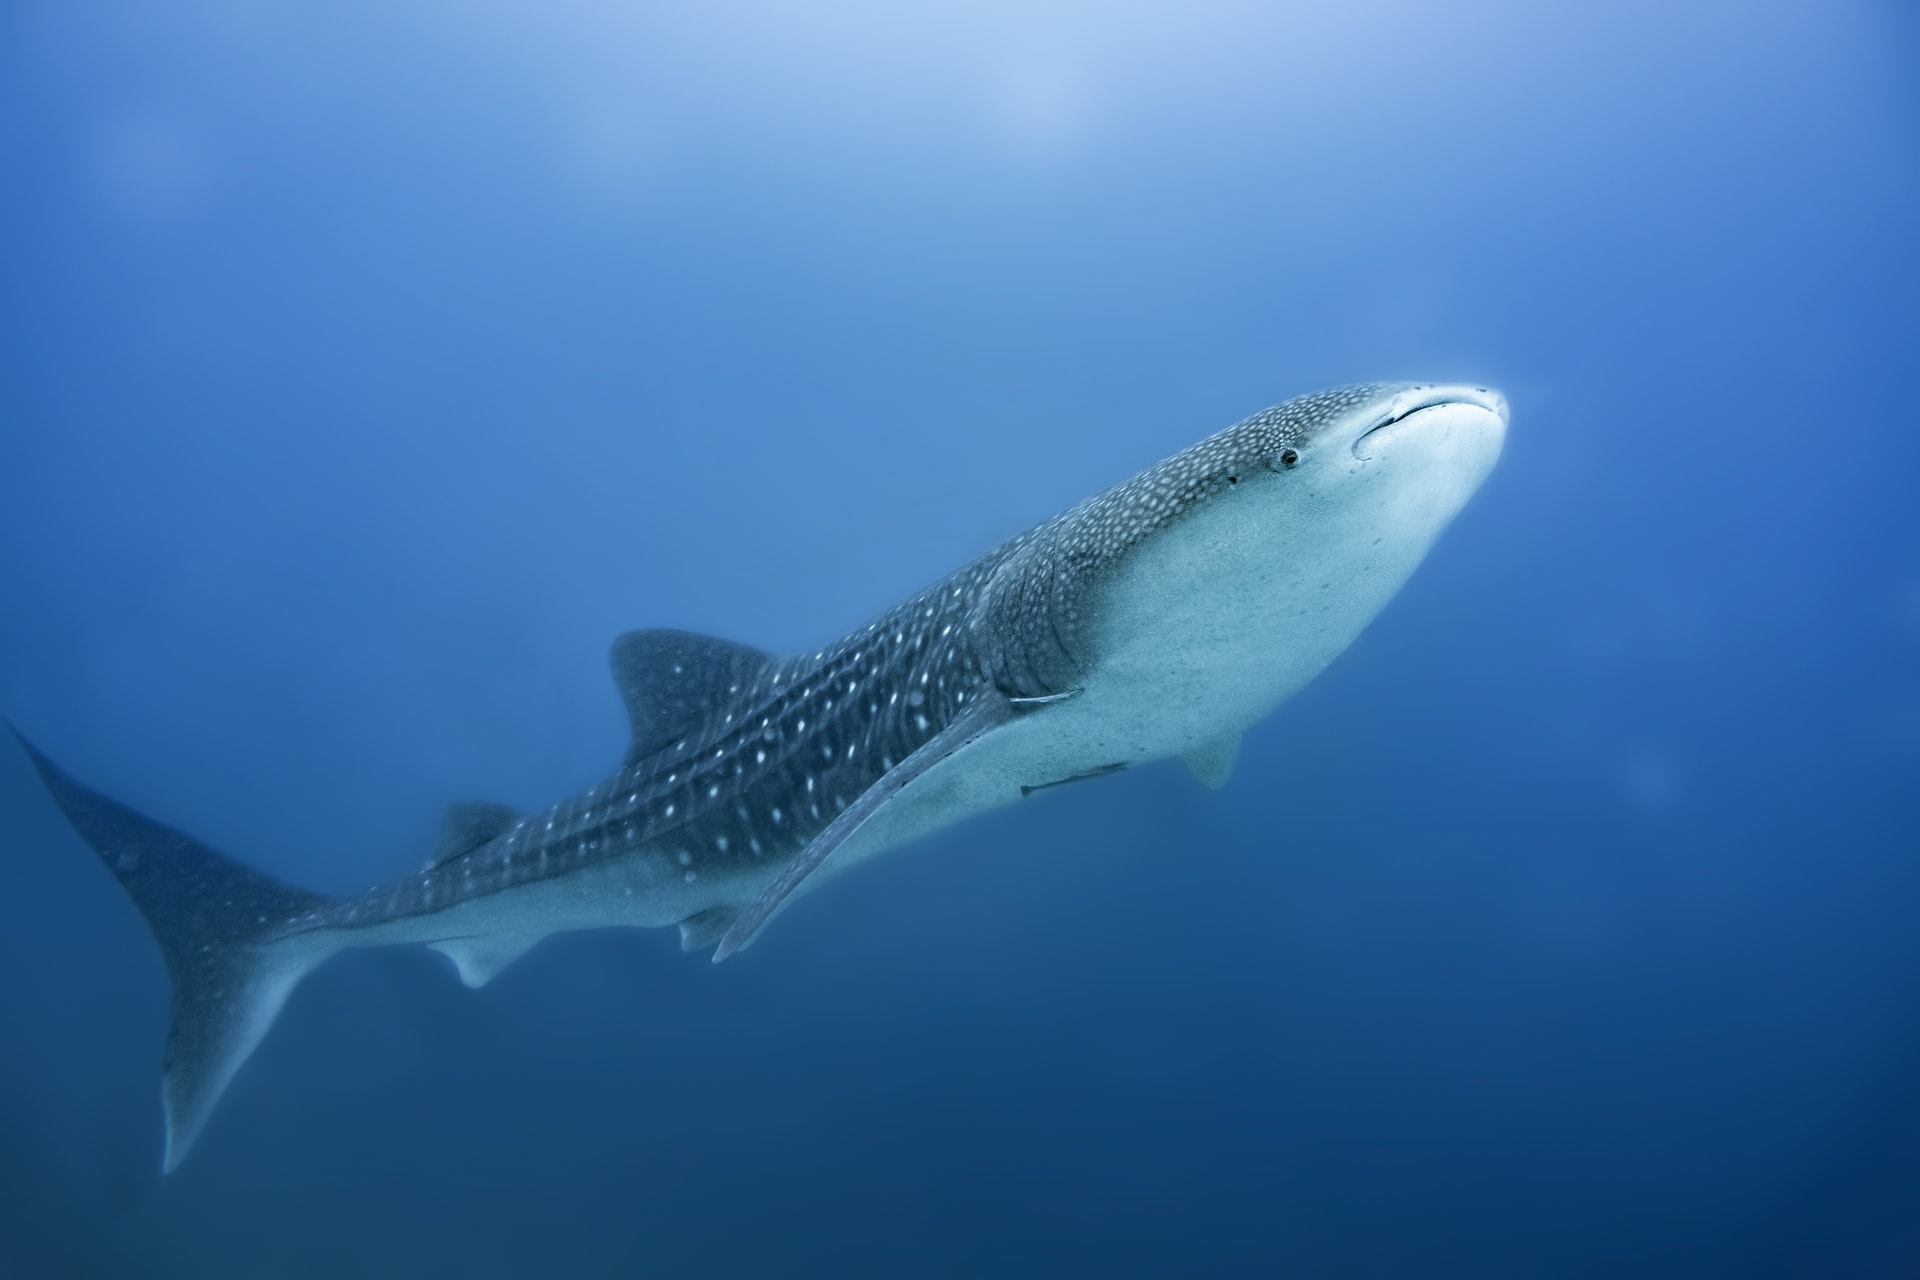 Todavía hay mucho que aprender sobre el ciclo vital del tiburón ballena. Esto es lo que sabemos. Los tiburones ballena son ovovivíparos: las hembras ponen huevos, pero éstos se desarrollan dentro de su cuerpo. Un estudio demostró que es posible que los tiburones ballena tengan varias camadas de un solo apareamiento. Las crías de tiburón ballena miden unos 60 centímetros al nacer. Los científicos no saben con exactitud cuánto tiempo viven los tiburones ballena, pero basándose en su gran tamaño y su edad en la primera reproducción (alrededor de 30 años en el caso de los machos) se cree que los tiburones ballena pueden vivir al menos entre 100 y 150 años.